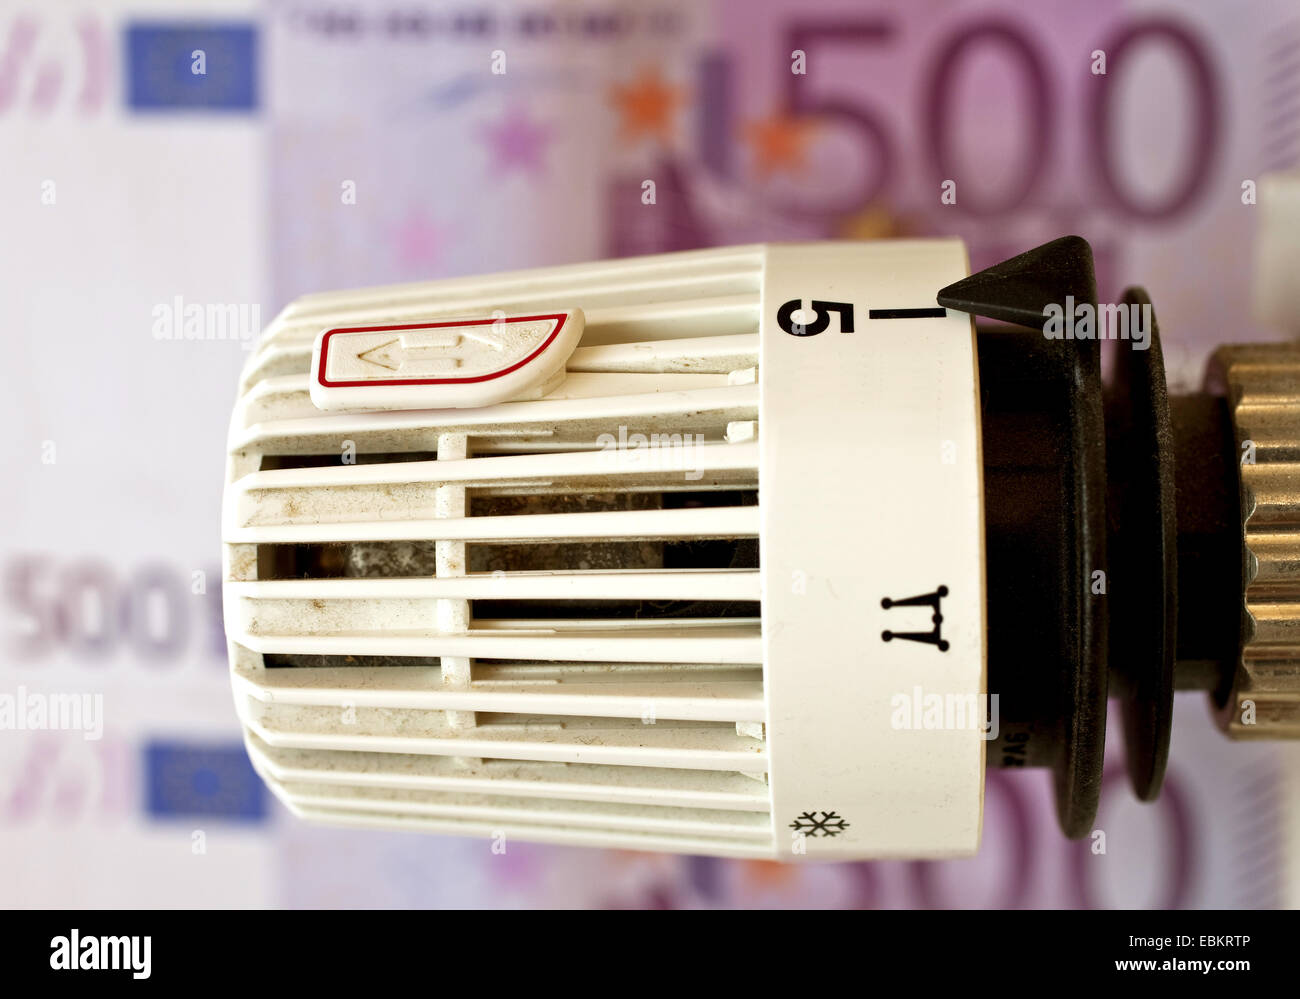 Termostati riscaldanti e le fatture in euro, riscaldamento coste simbolo, Germania Foto Stock